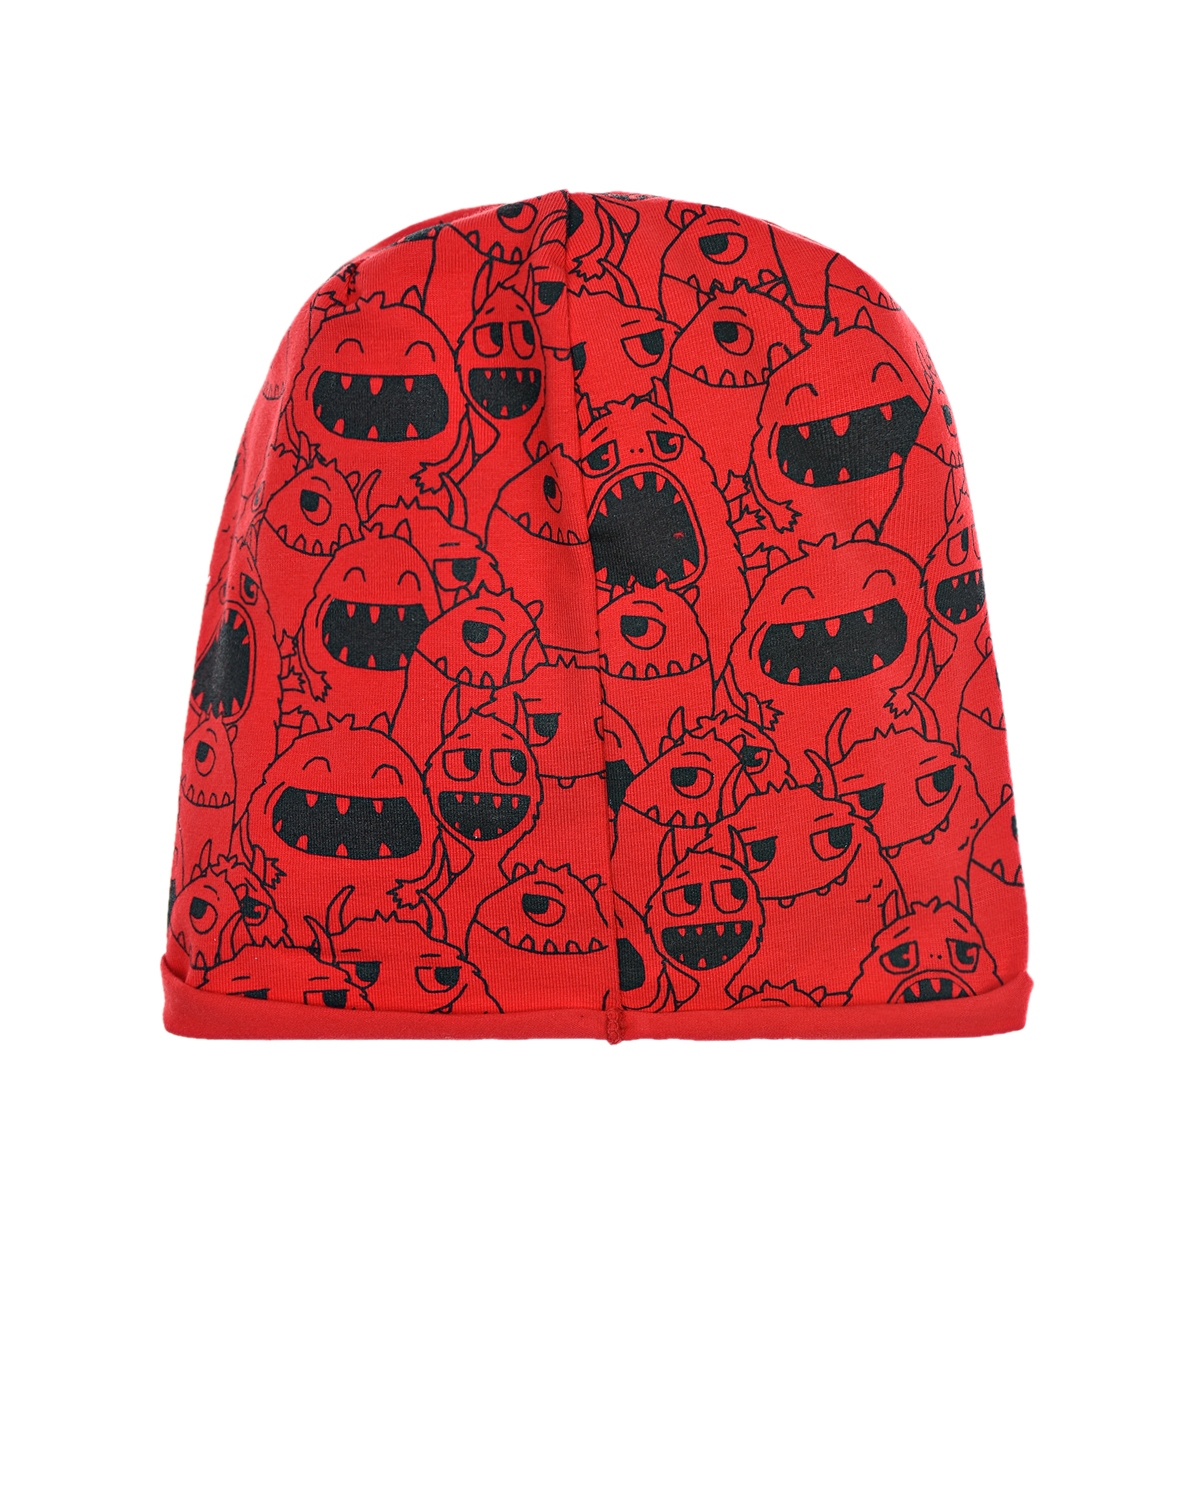 Красная трикотажная шапка с принтом "Монстры" Catya детская, размер 49, цвет красный - фото 2